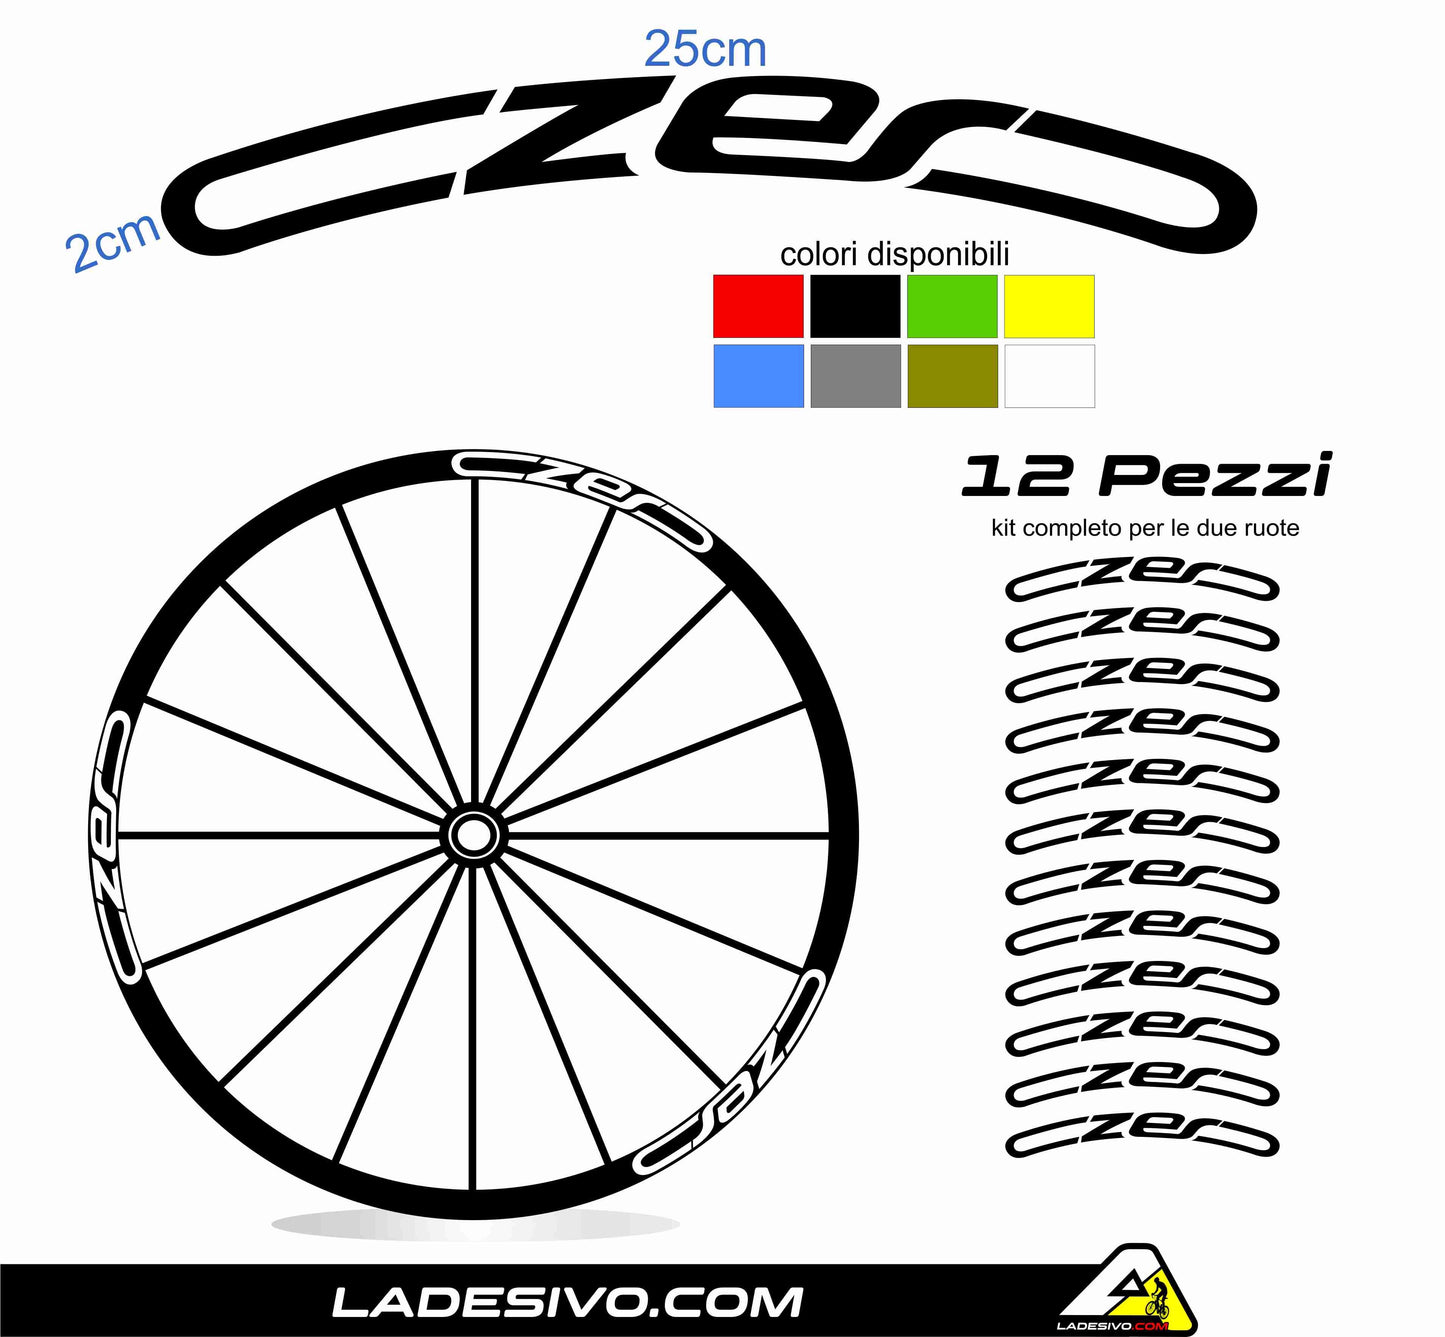 Adesivi cerchi ruote mtb CZERO cannondale personalizzabili customizable color